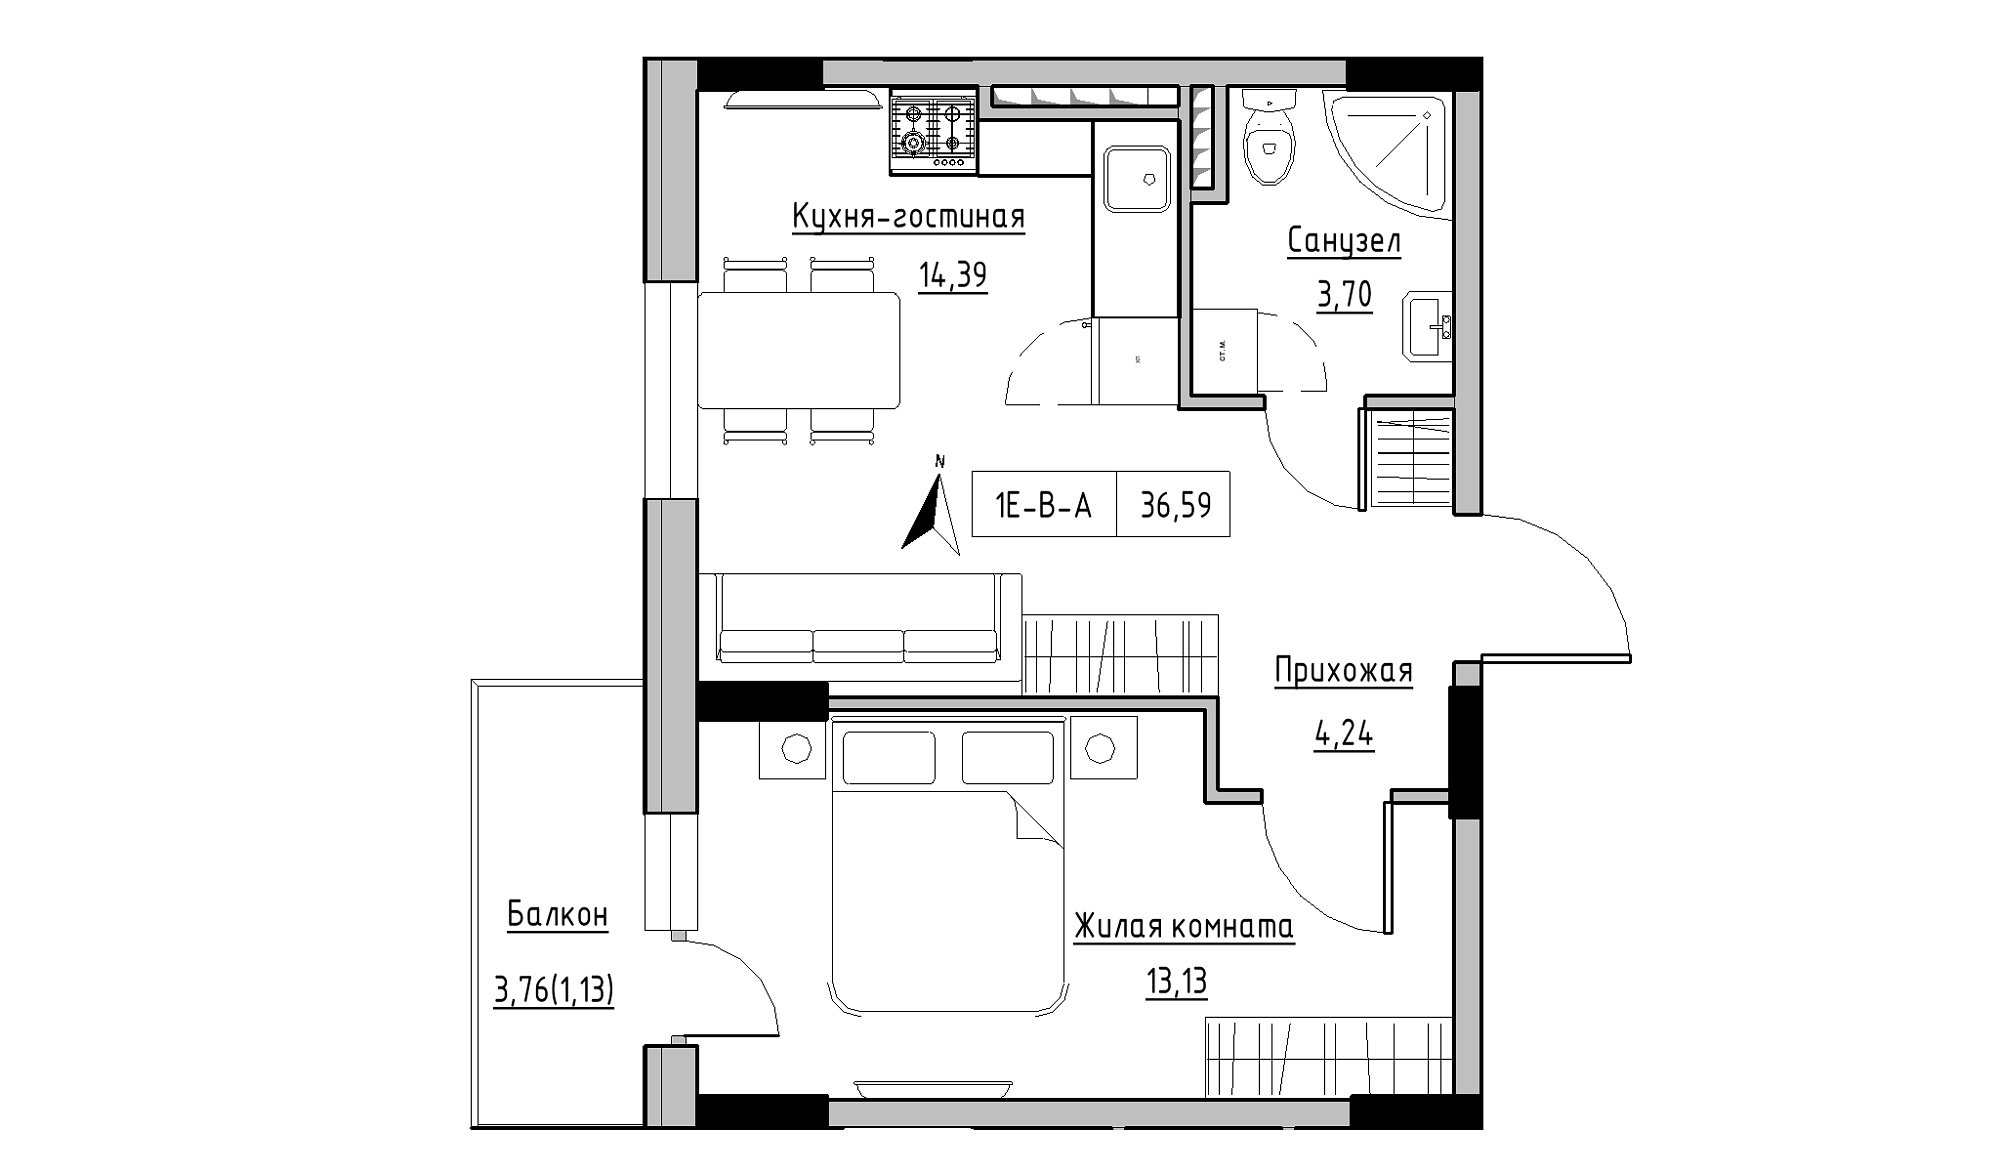 Планировка 1-к квартира площей 36.59м2, KS-025-04/0004.